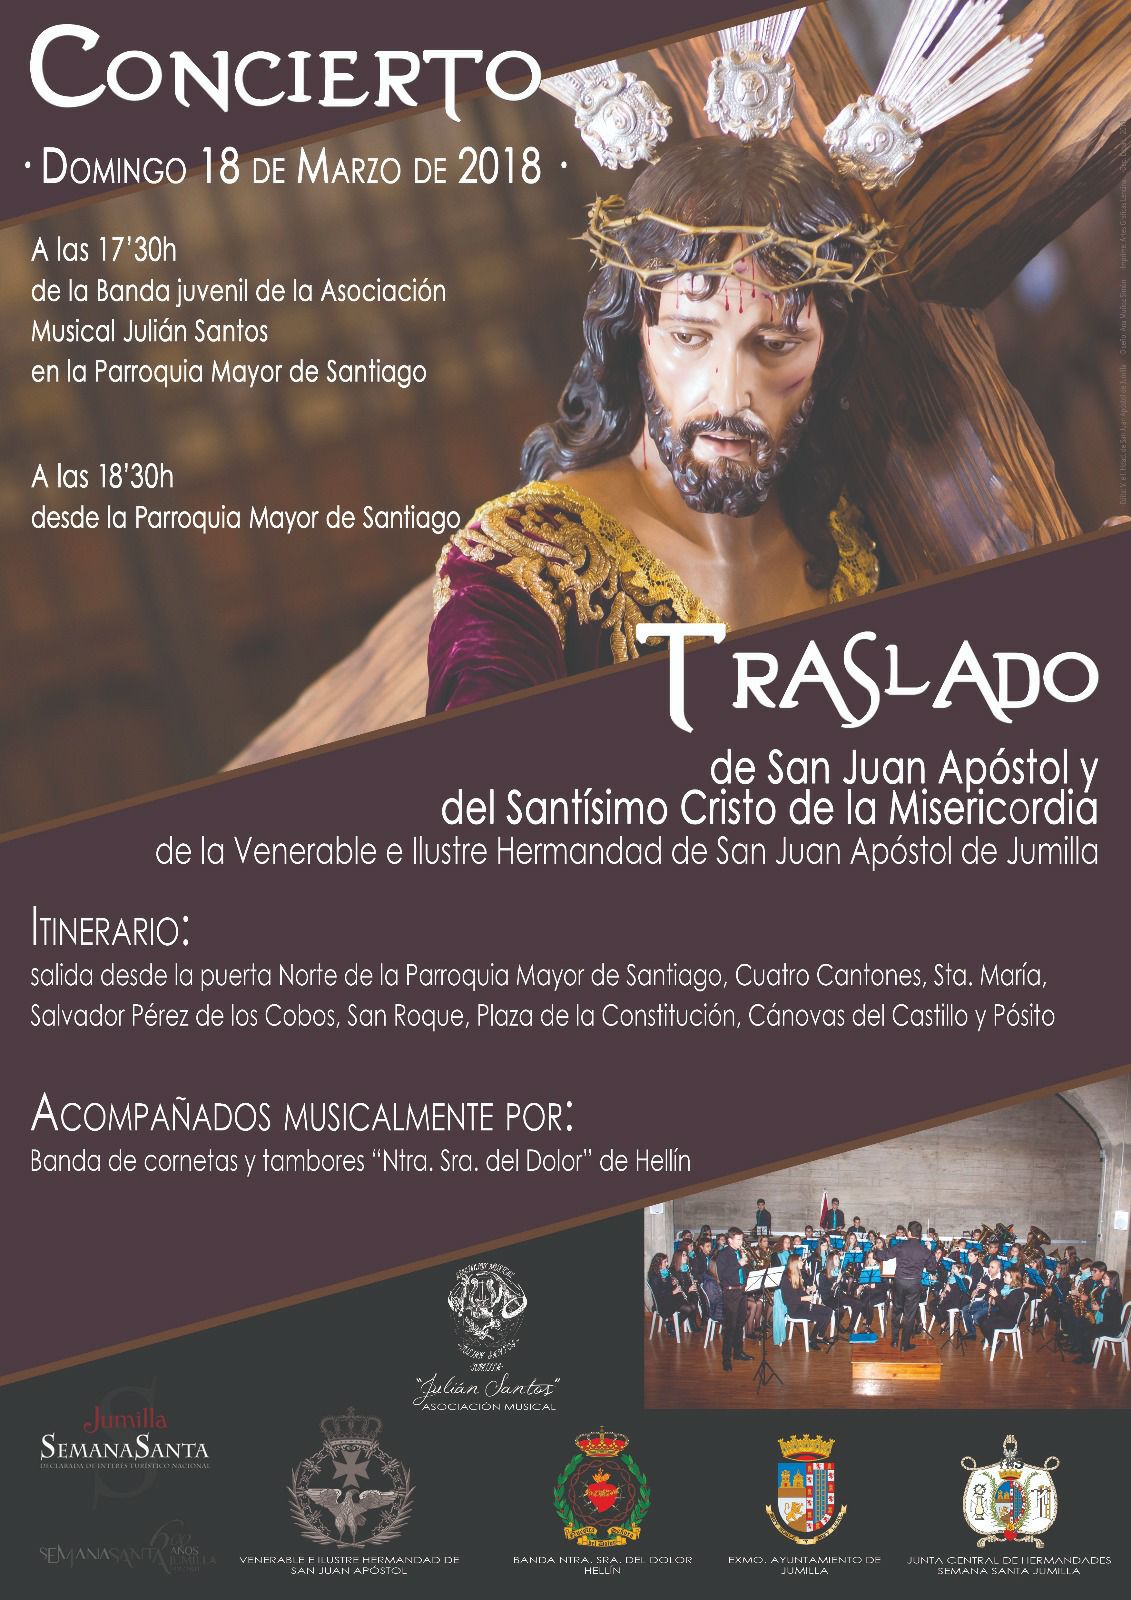 El domingo, concierto y traslado de San Juan Apóstol y Santísimo Cristo de la Misericordia